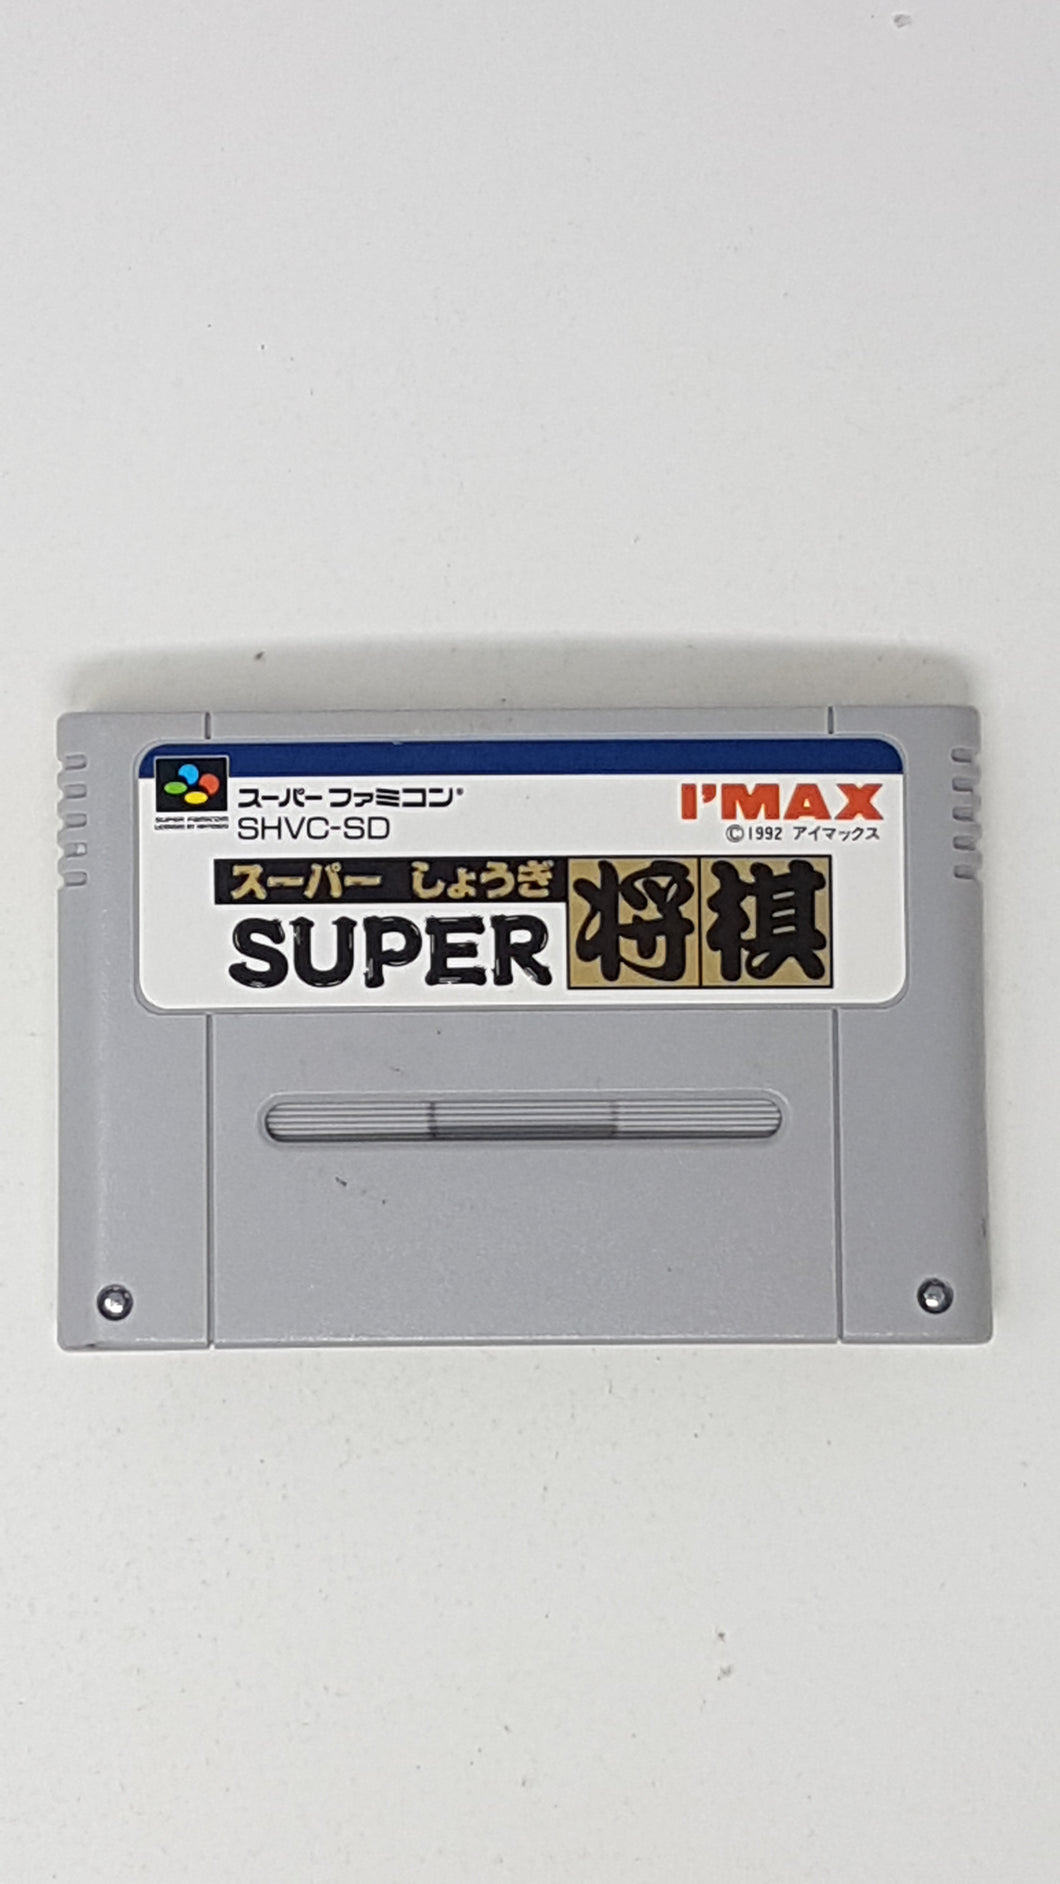 Super Shougi - [Import] Super Famicom | SFC